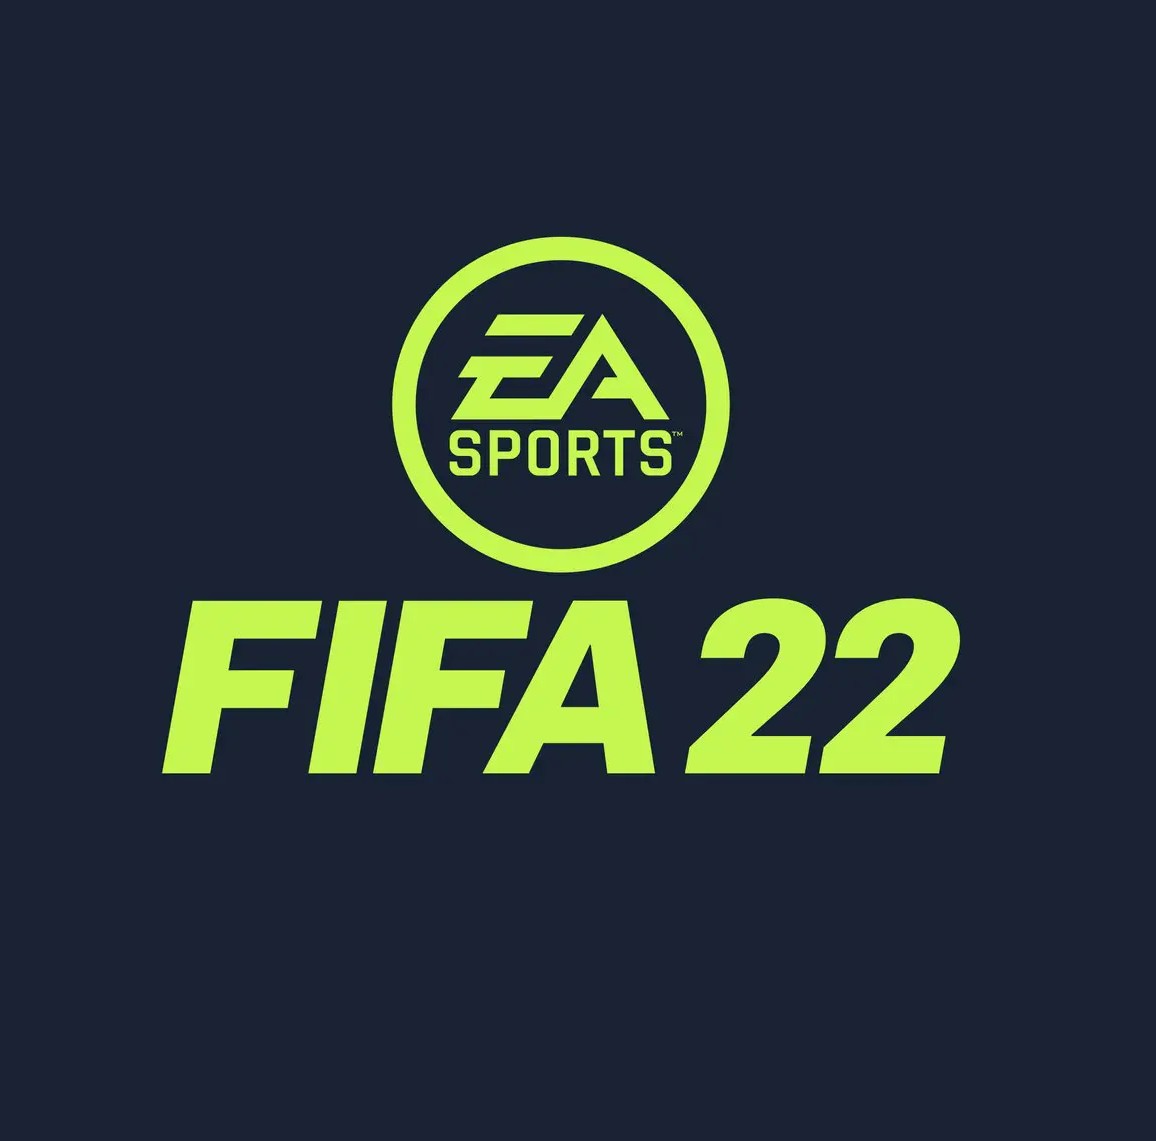 Patrocinadores 2021/22 e Ingreso de Dinero - Página 3 Fifa-22-logomarca